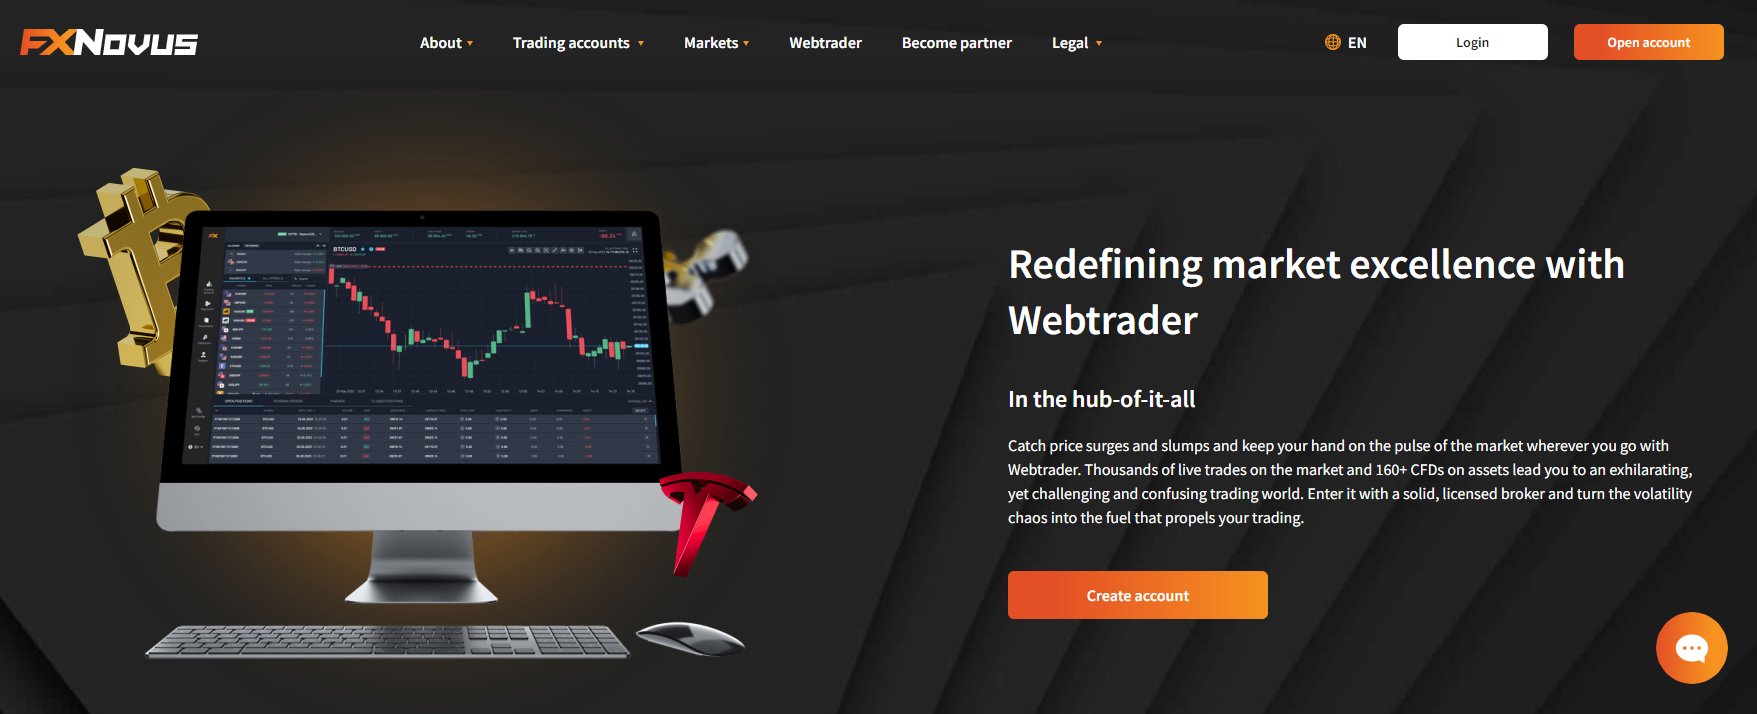 Page WebTrader de FXNovus affichant des graphiques, des indicateurs et des outils de trading